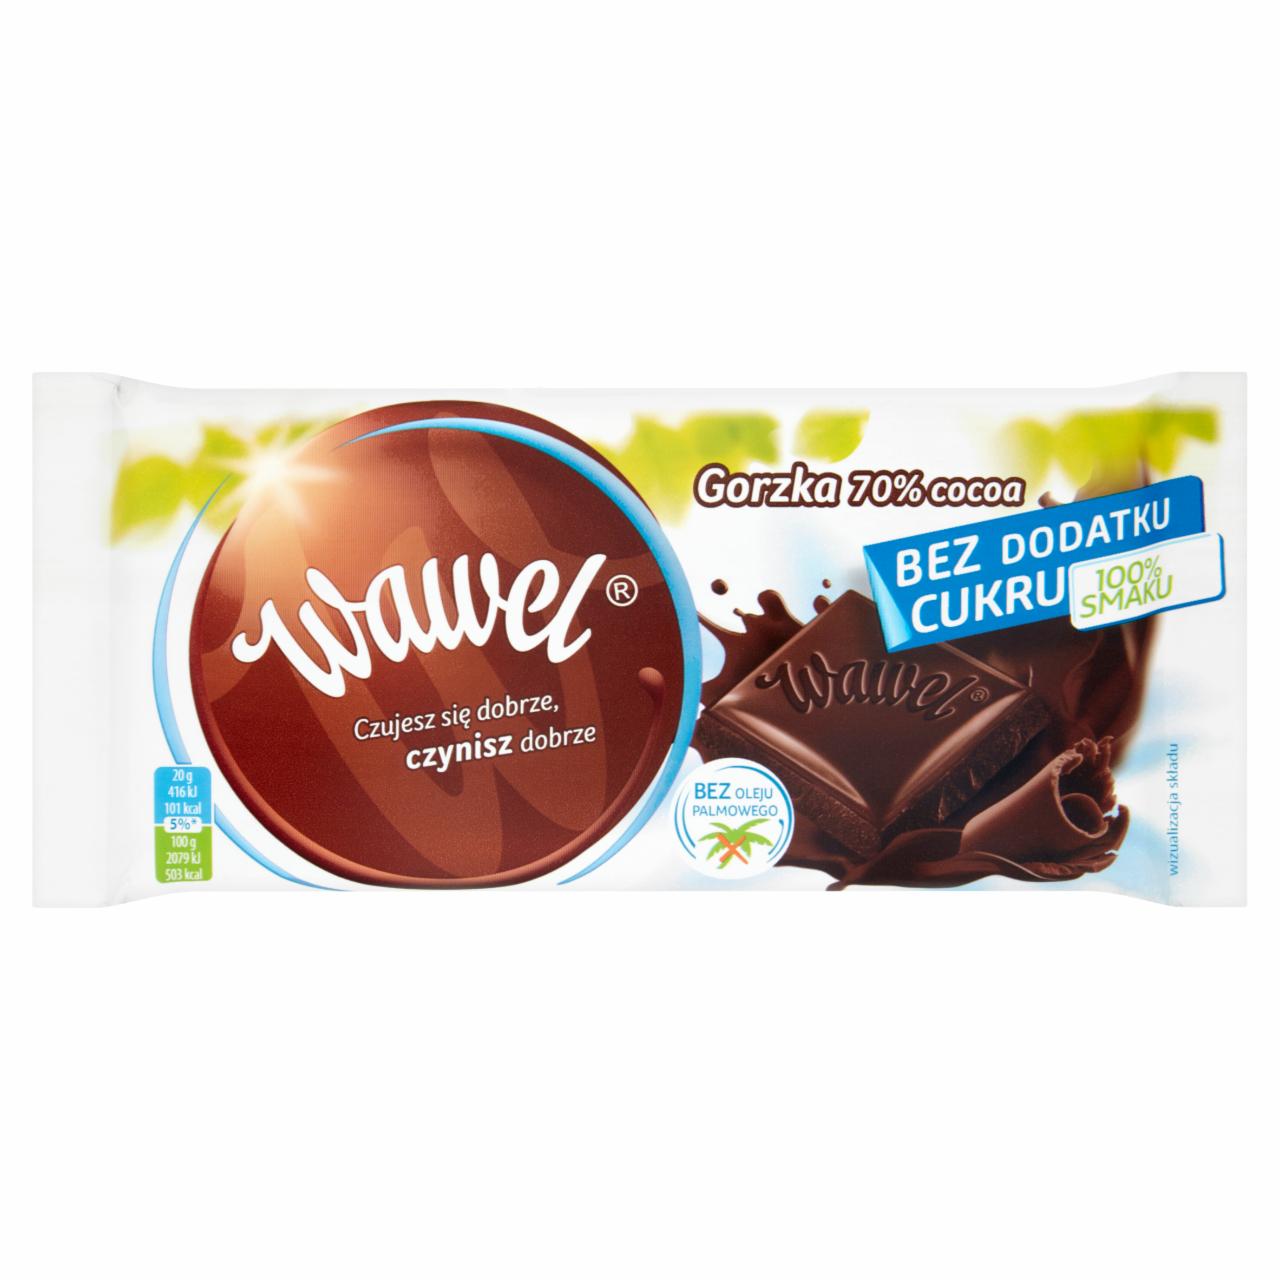 Zdjęcia - Wawel Gorzka 70% Cocoa bez dodatku cukru Czekolada 100 g